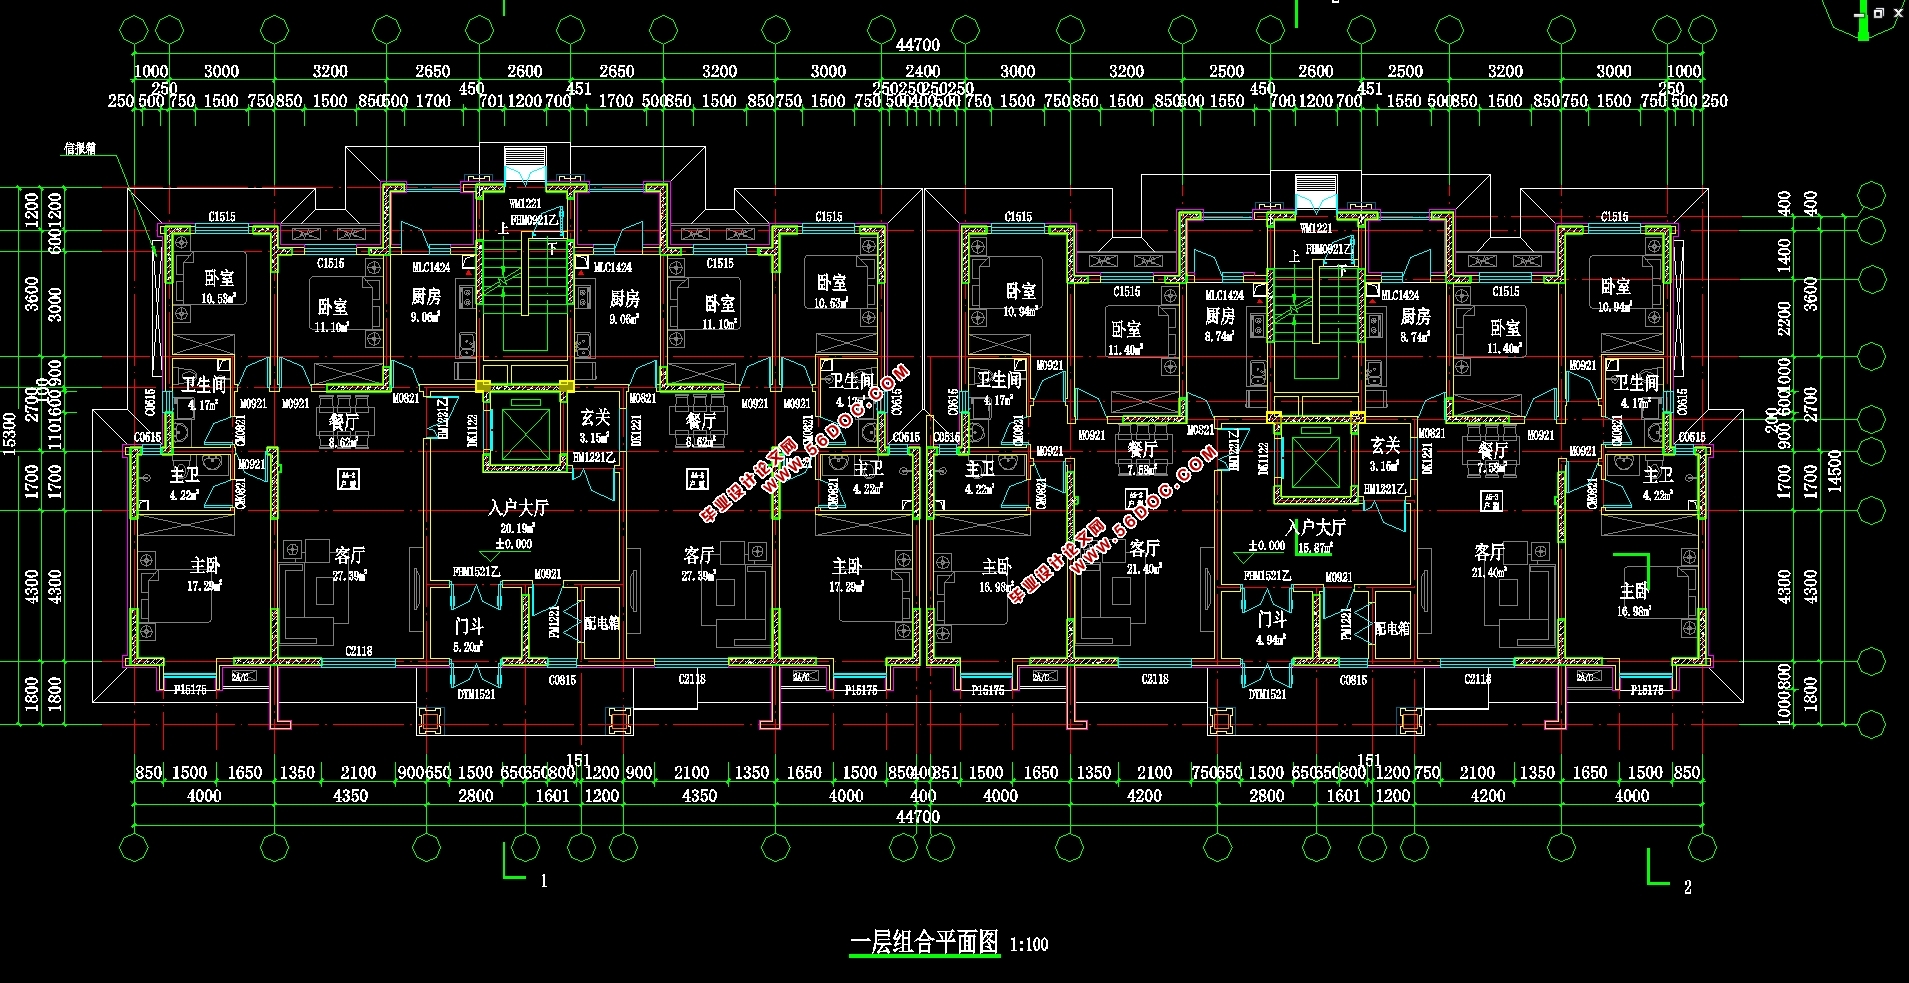 七层4714平米剪力墙结构花园住宅楼项目施工组织设计(施工图,平面布置图,施工进度计划图)